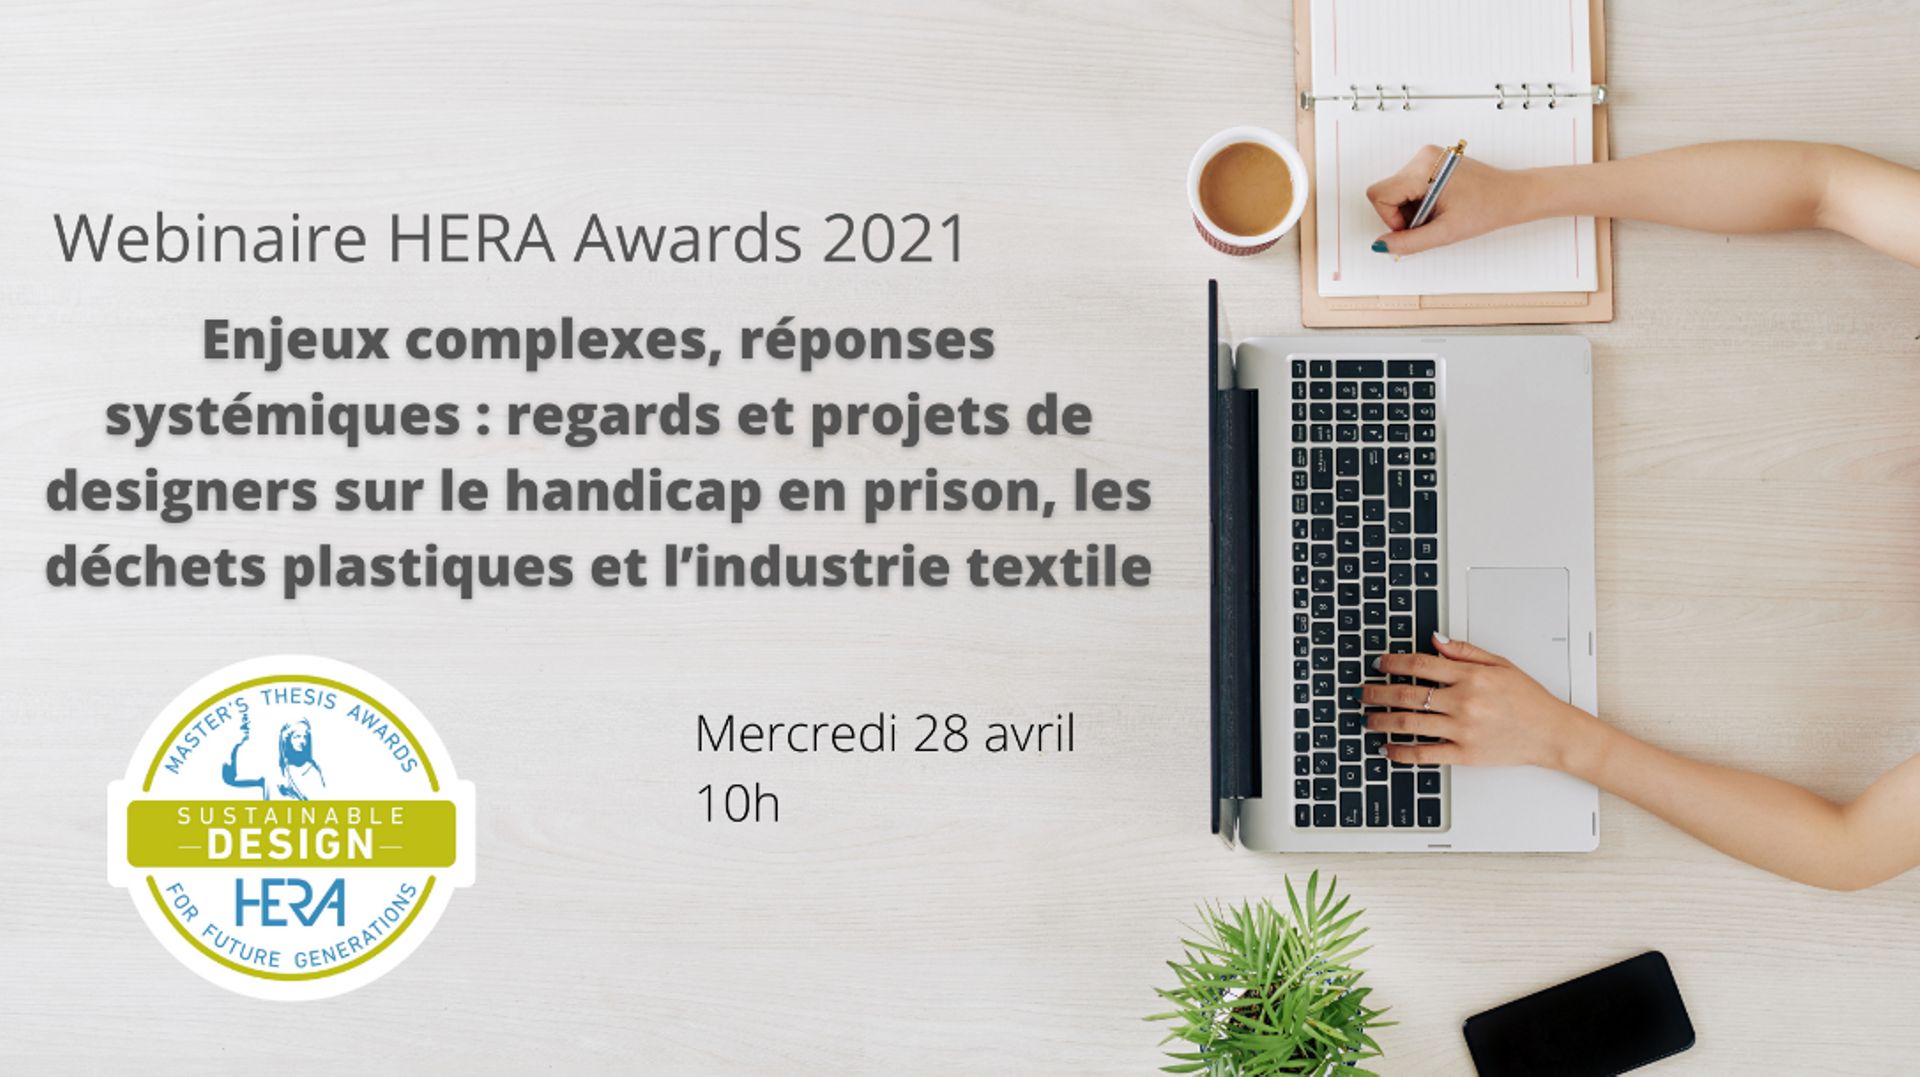 Webinaire HERA Awards 2021 